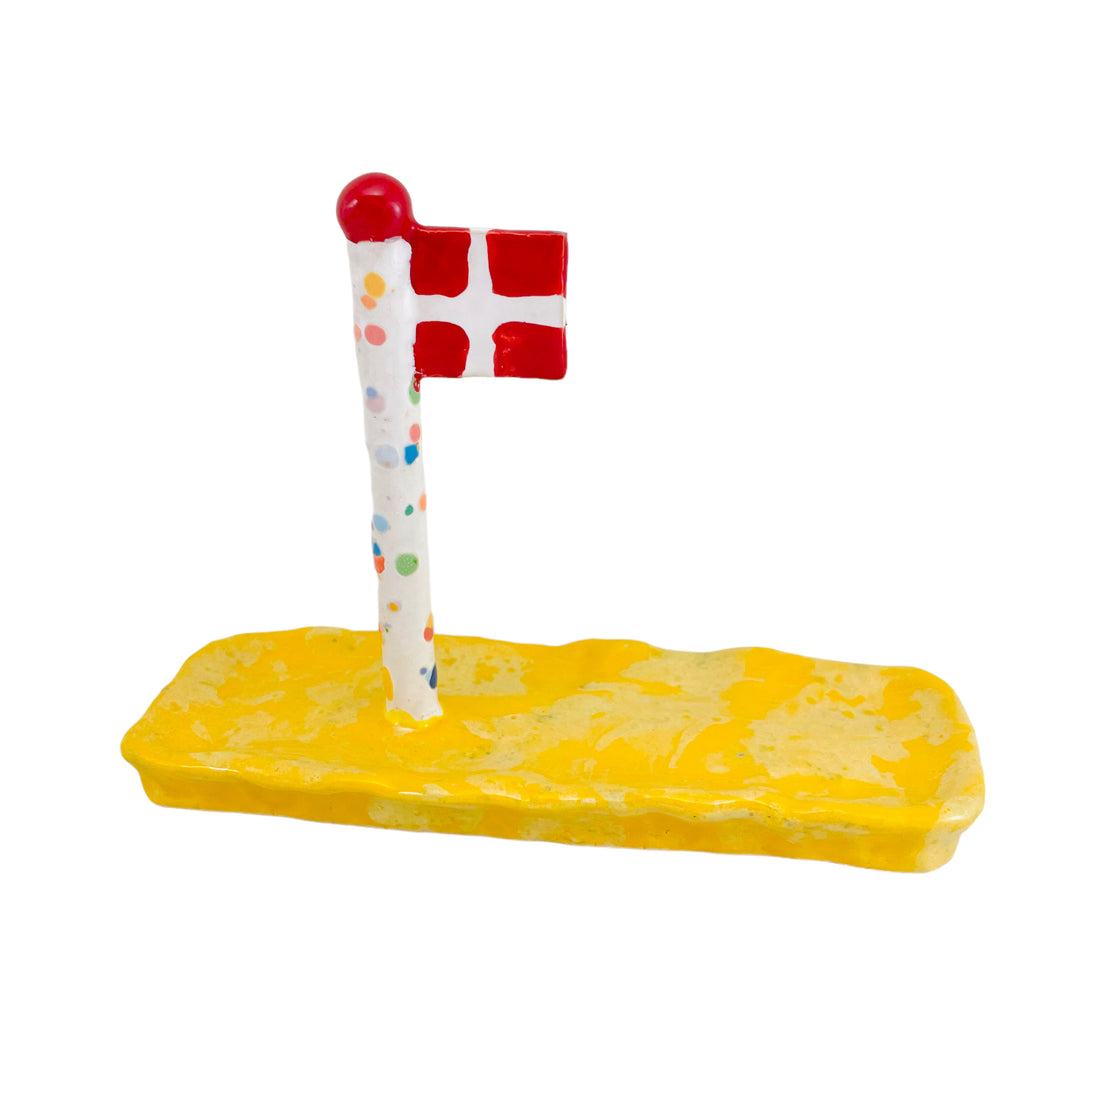 Harlekin flag på bred fod som også er et lille fad til slik eller småkager